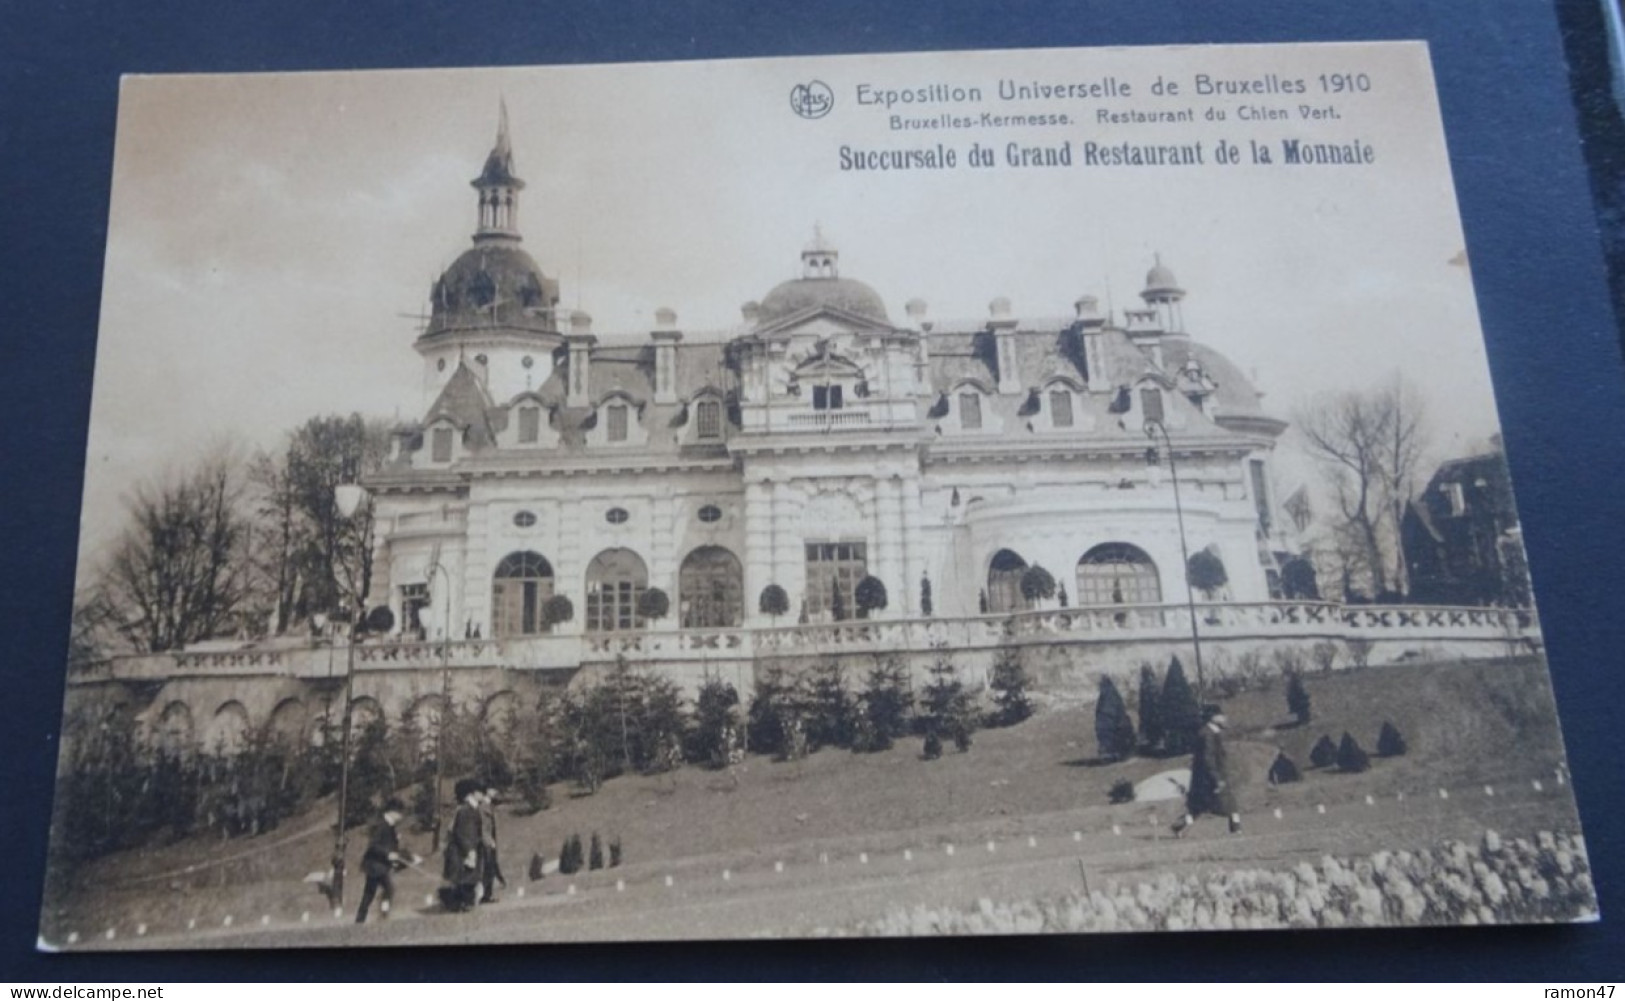 Exposition Universelle De Bruxelles 1910 - Succursale Du Grand Restaurant De La Monnaie - Bruxelles-Kermesse - Musées